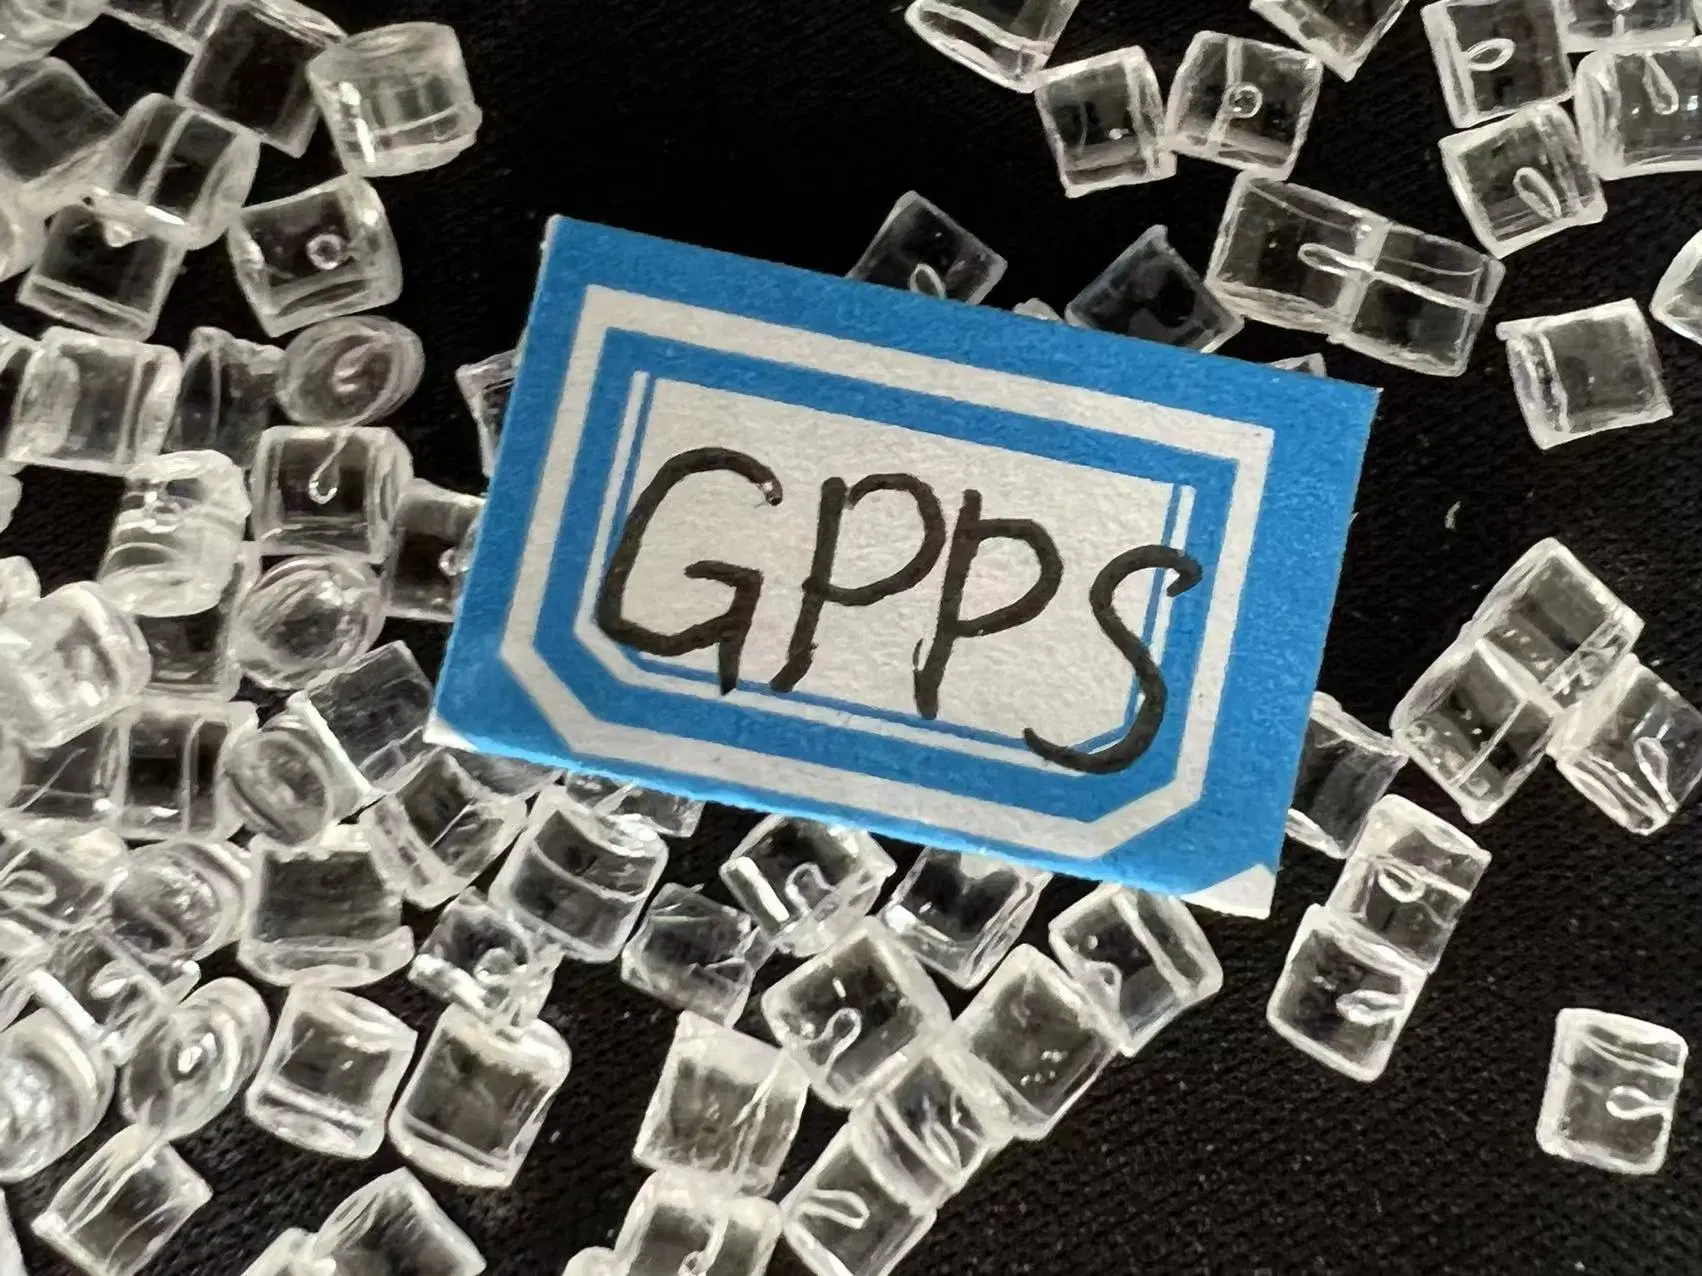 Virgin GPPS Resin / General Purpose Polystyrene Granules / GPPS Plastic Raw Material